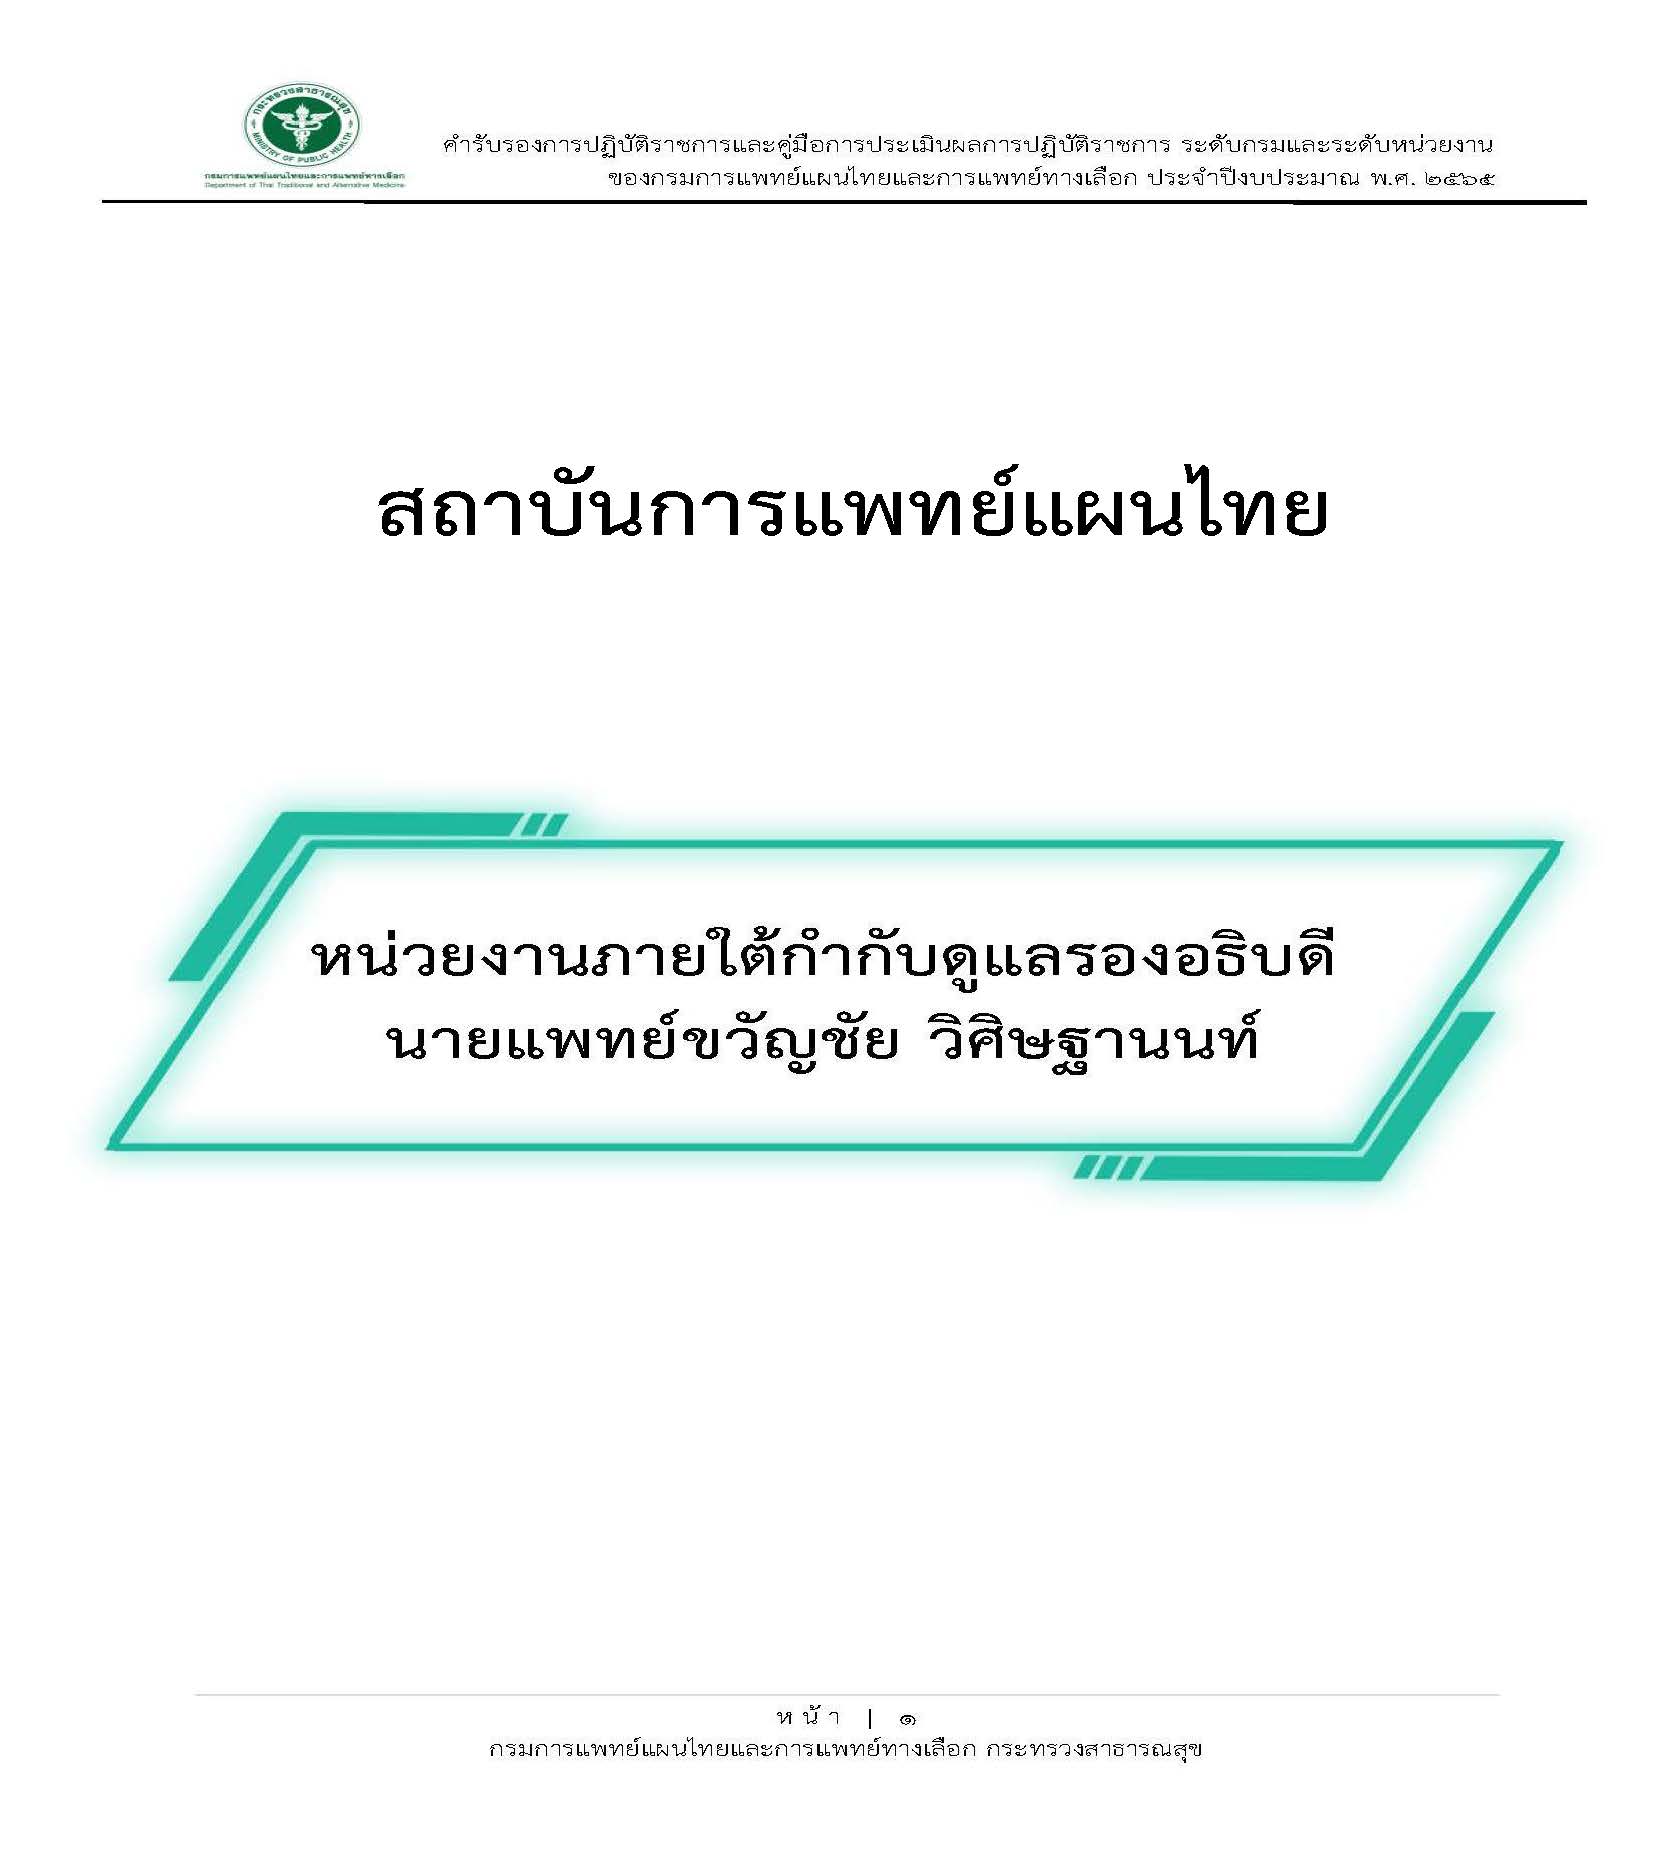 คำรบรองการปฏบตราชการ และตวชวด สถาบนการแพทยแผนไทย 27 เมษายน 2565